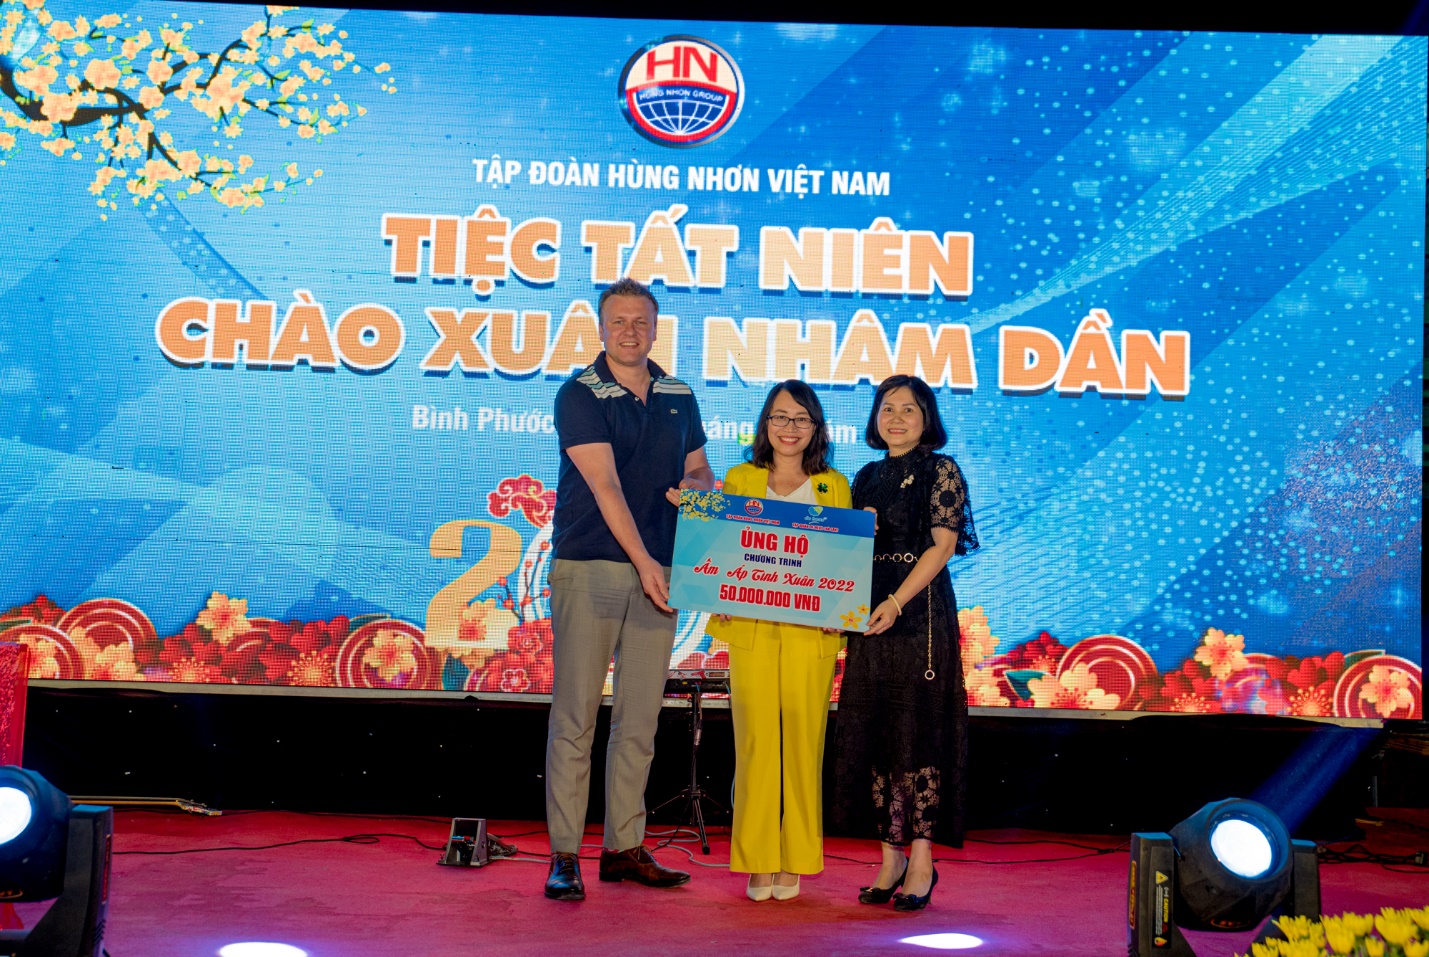 Tập đoàn Hùng Nhơn chia sẻ khó khăn, tặng quà tết cho hàng nghìn người nghèo các tỉnh Tây Nguyên - Ảnh 5.